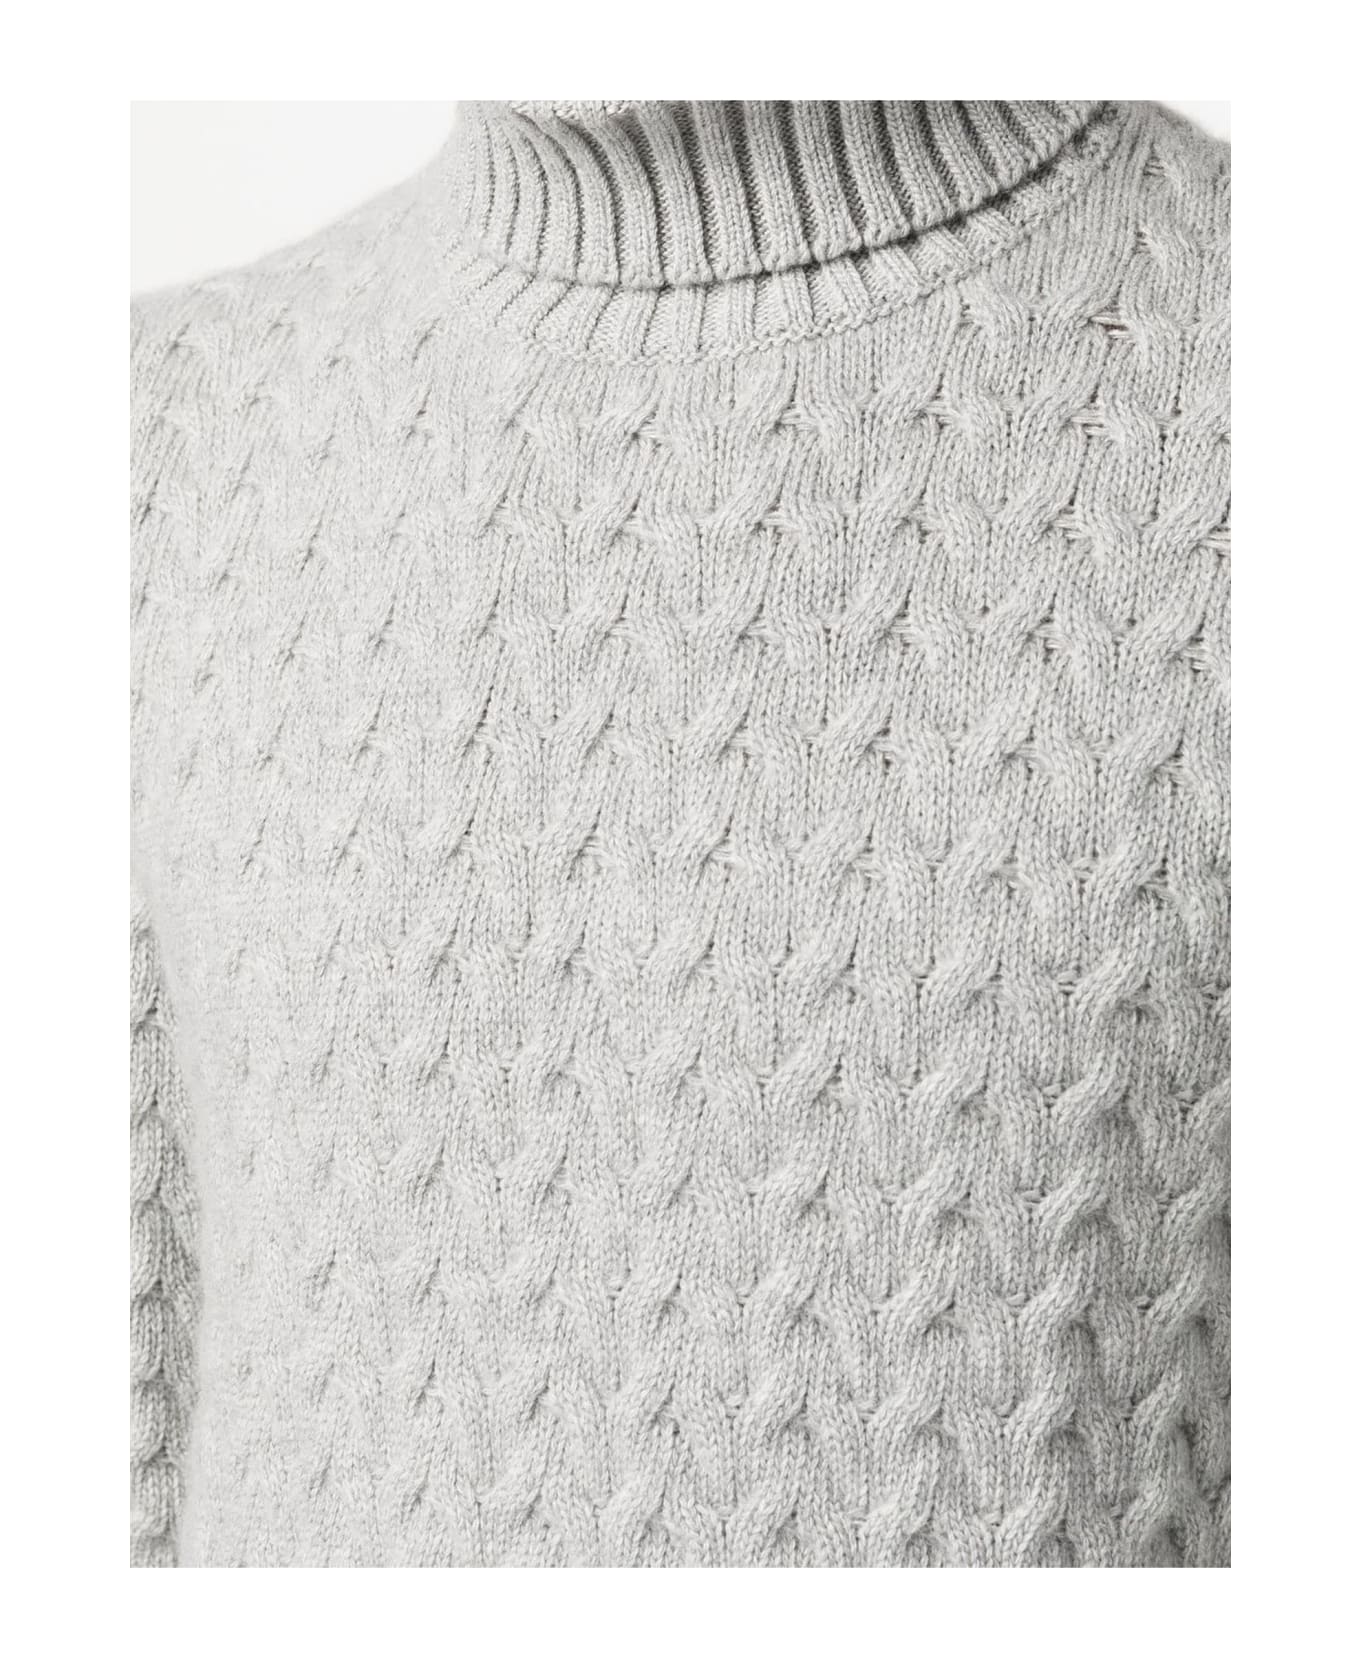 Fedeli Grey Virgin Wool-cashmere Blend Jumper - Grey ニットウェア